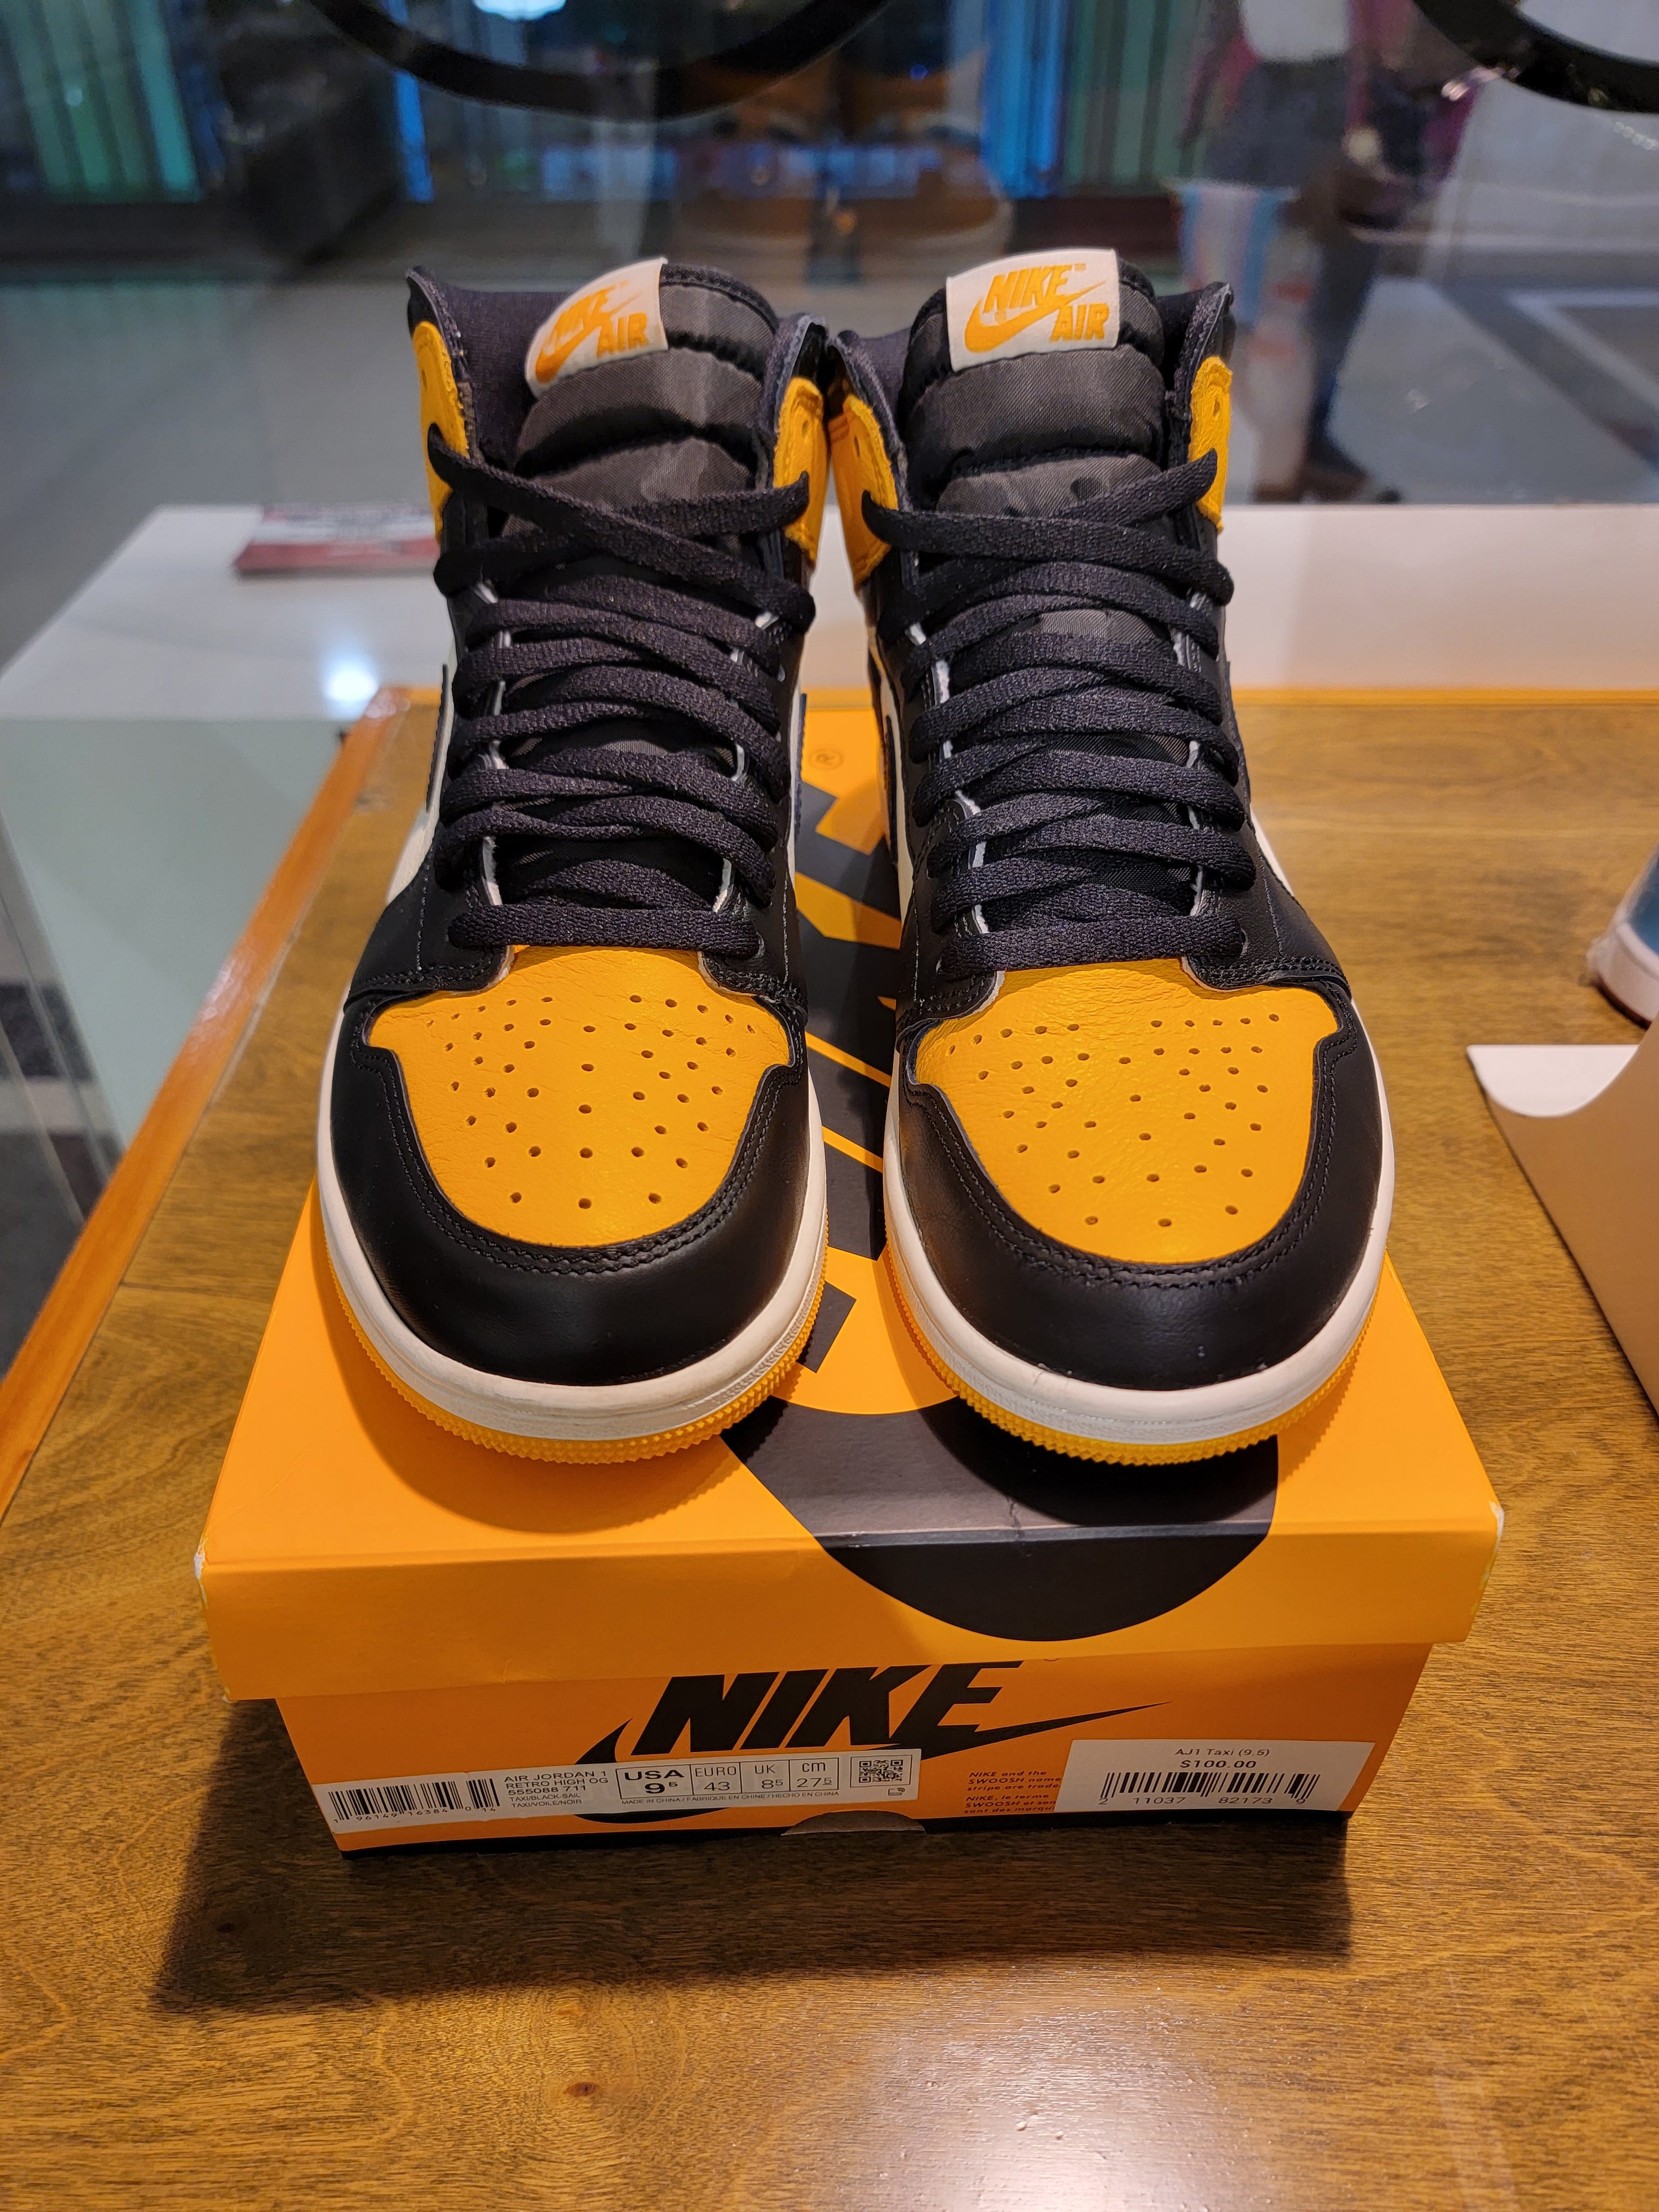 Men’s Pre Owned Air Jordan 1 Retro Yellow Toe Size 9.5